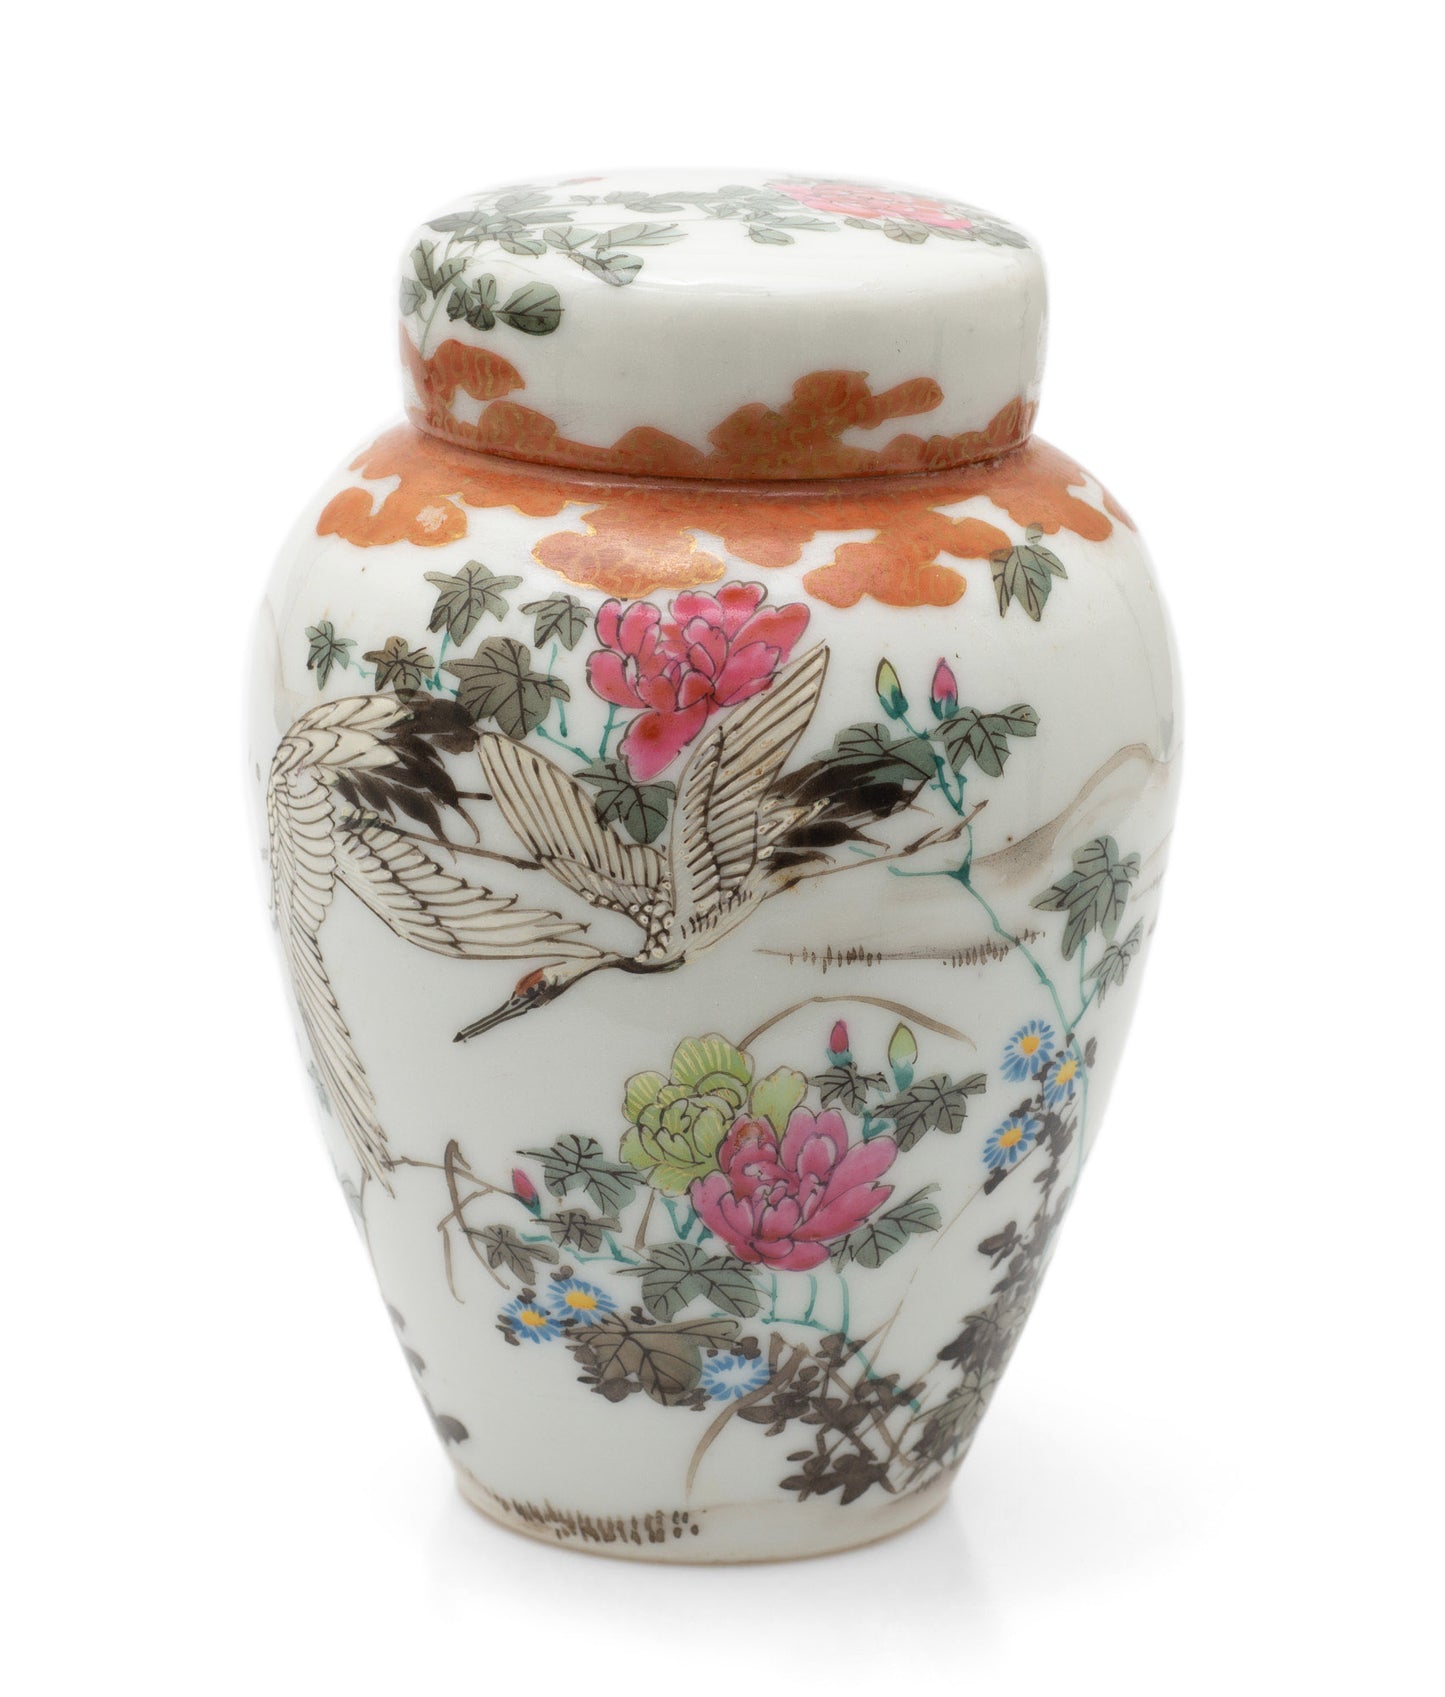 Antique Japanese Kutani Porcelain Flying Cranes Jar with Lid & Floral Designs (Code 2460)